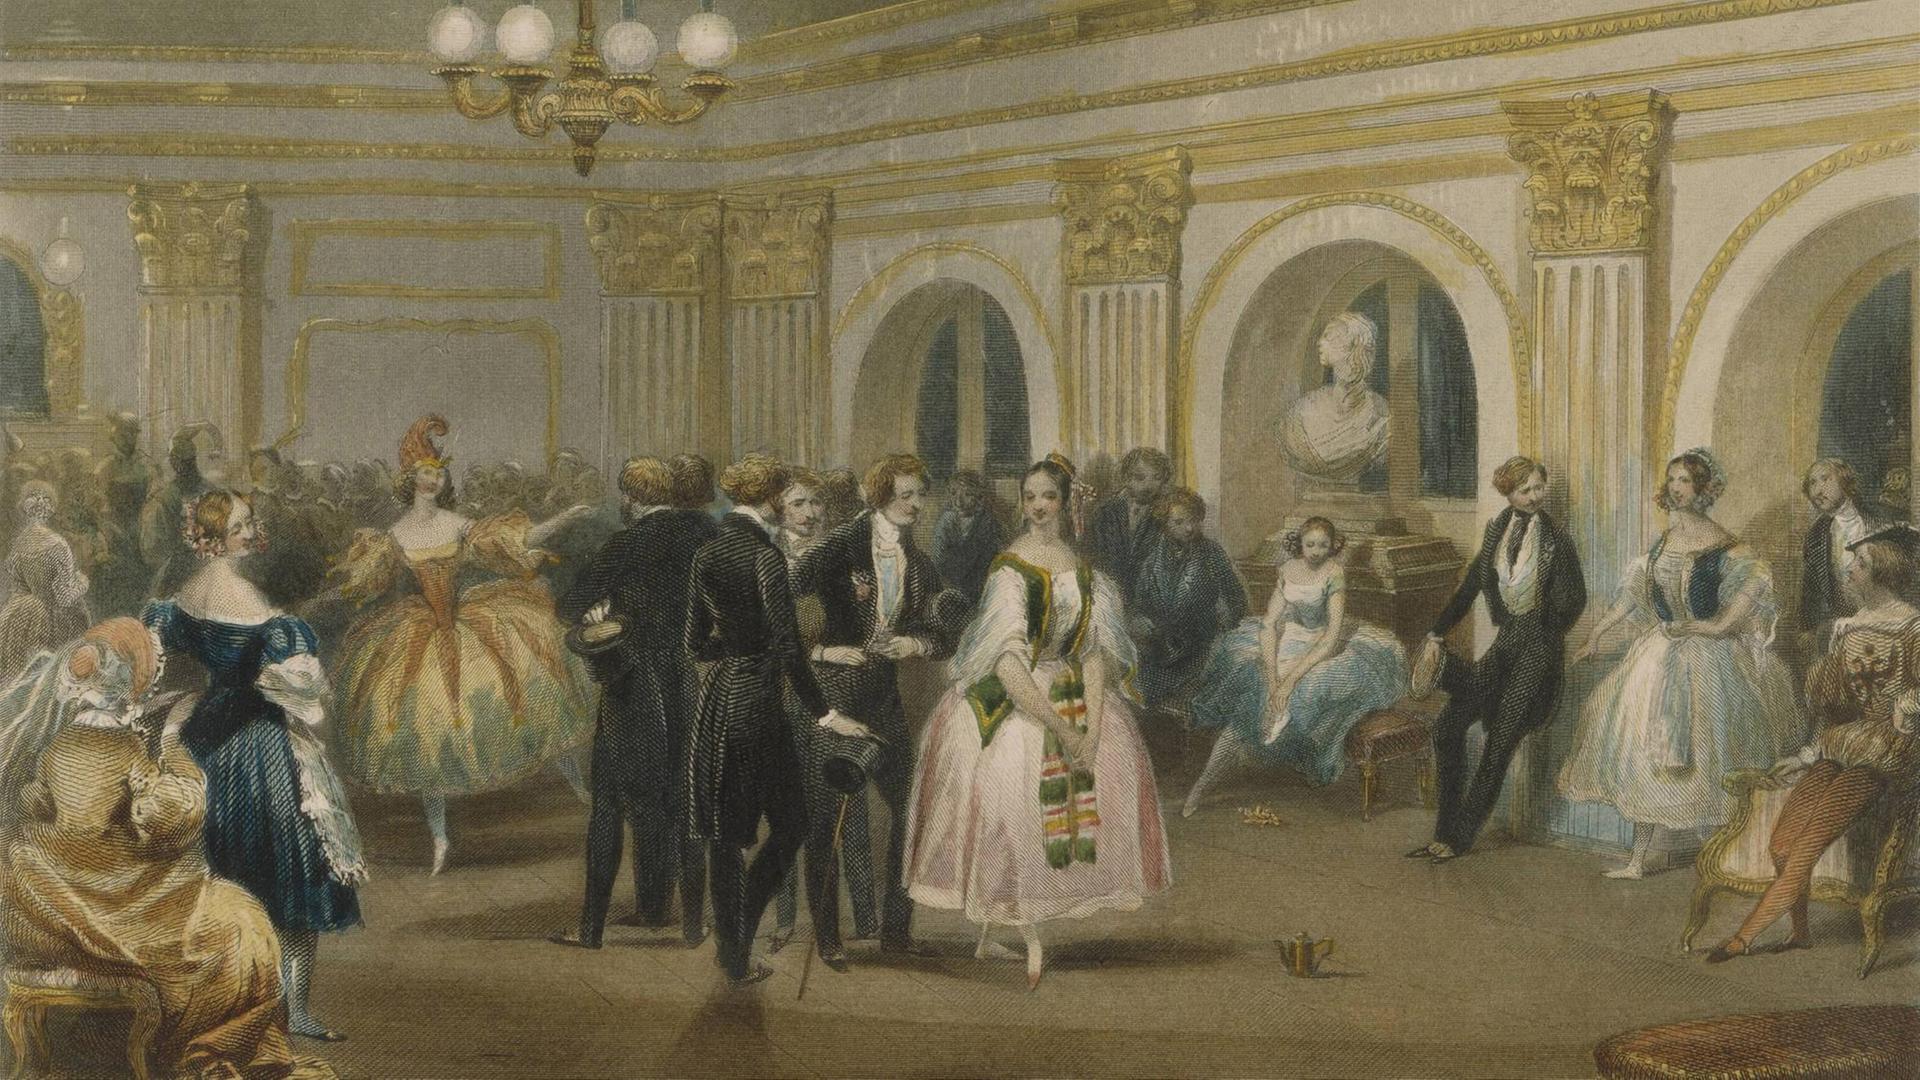 Die Académie Royale de Musique in Paris (Opéra), sogenannte Salle le Peletier, in der Rue Le Peletier. Das 1820/21 erbaute Gebäude war die Spielstätte der Opéra von 1821 bis 1873. Foyer des Acteurs à lOpéra. Stahlstich, koloriert, 1841, von Robert Staines (18051849) nach Eugène Lami (18001890). Paris, Bibliothèque de lOpéra.